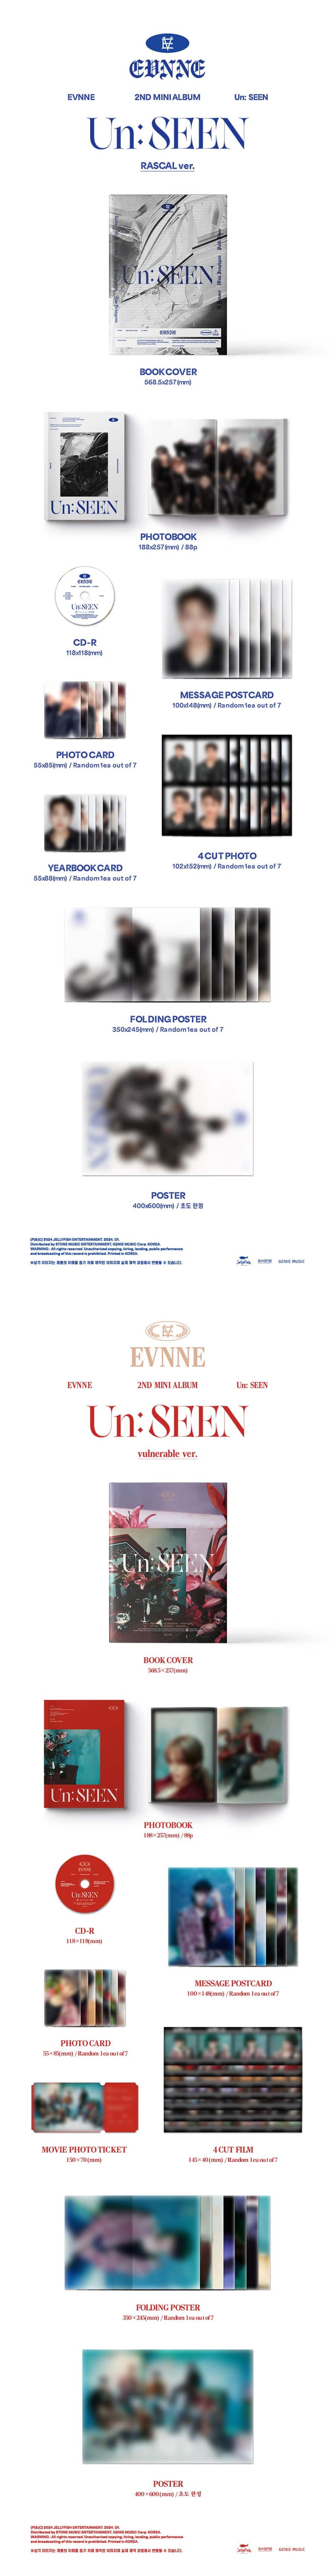 evnne-2nd-mini-album-un-seen-wholesales